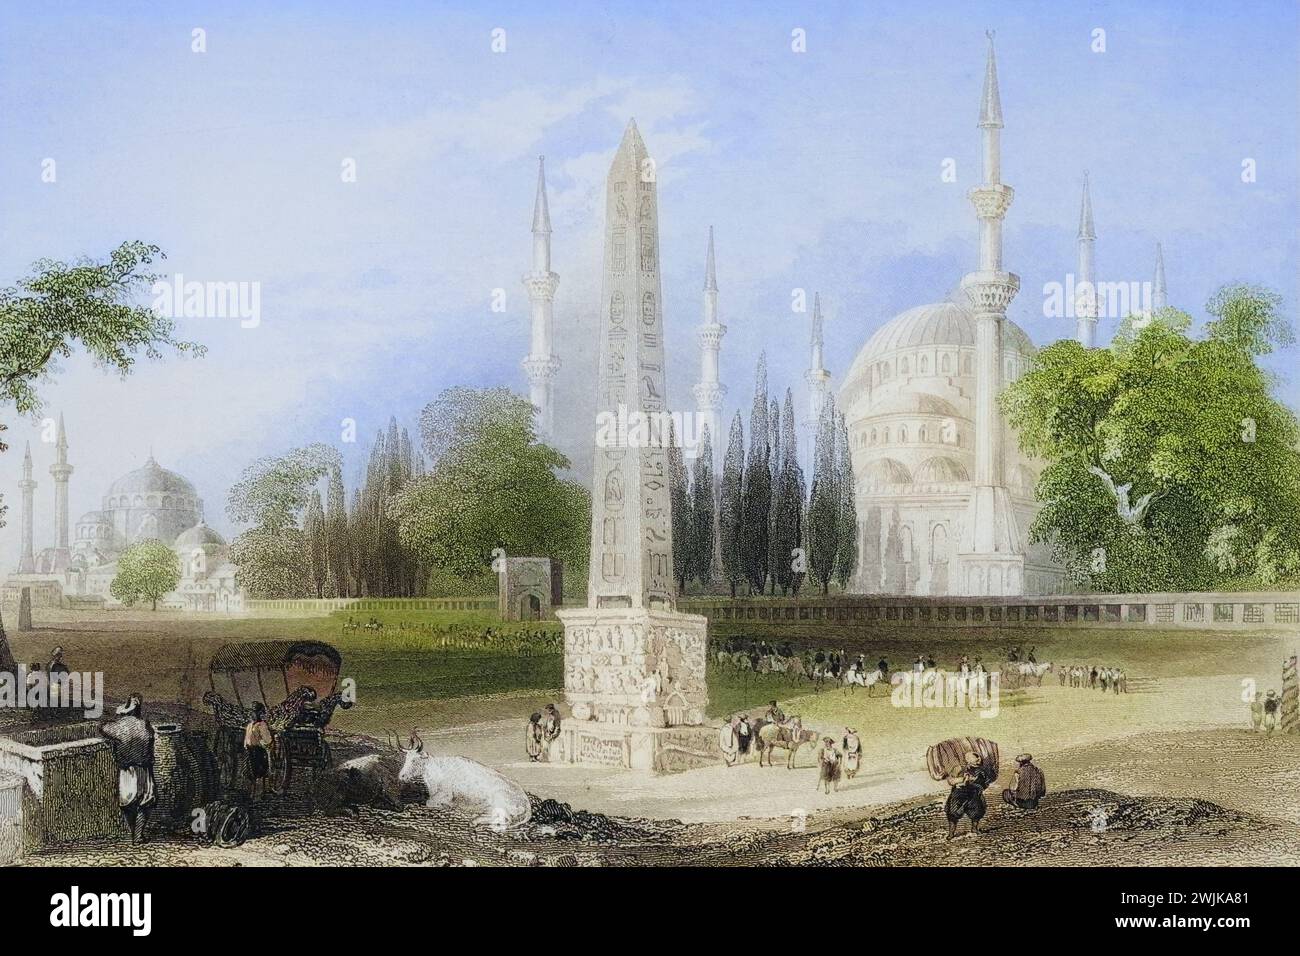 Das Atmeidan oder Hippodrom, Konstantinopel, Historisch, digital restaurierte Reproduktion von einer Vorlage aus dem 19. Jahrhundert, Record date not stated Stock Photo